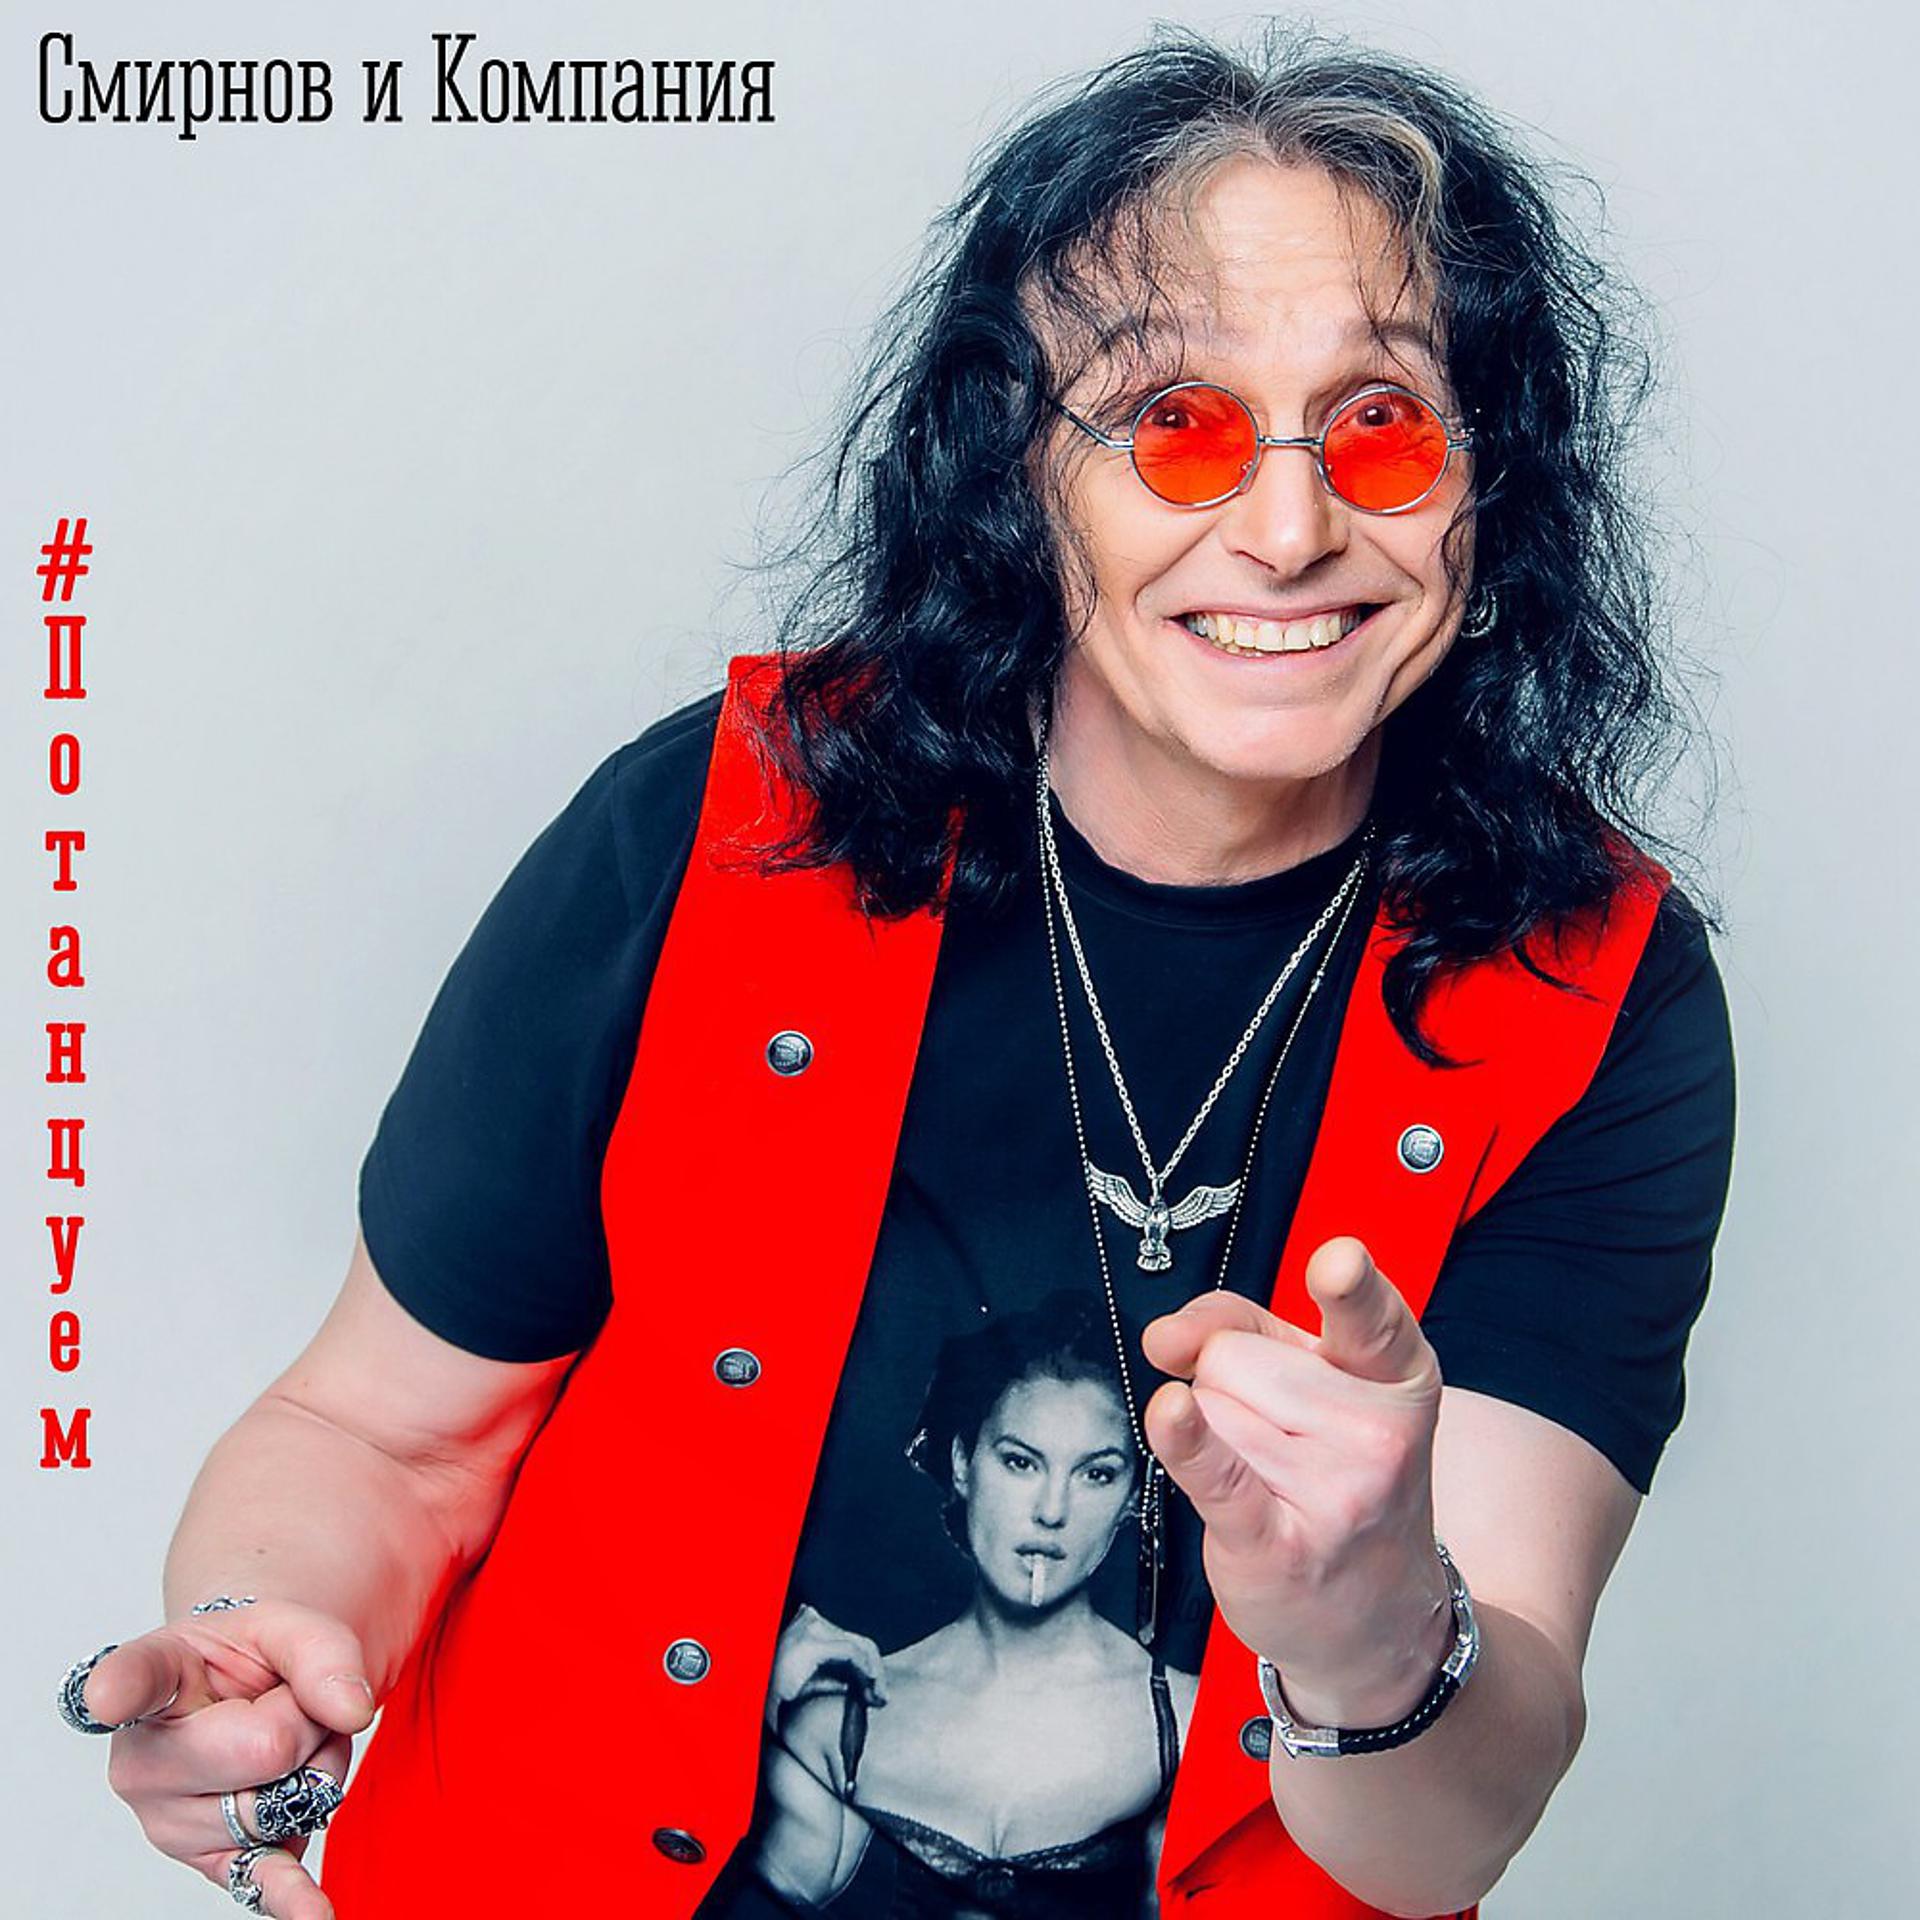 Постер к треку Группа "Смирнов и Компания" - Огонек